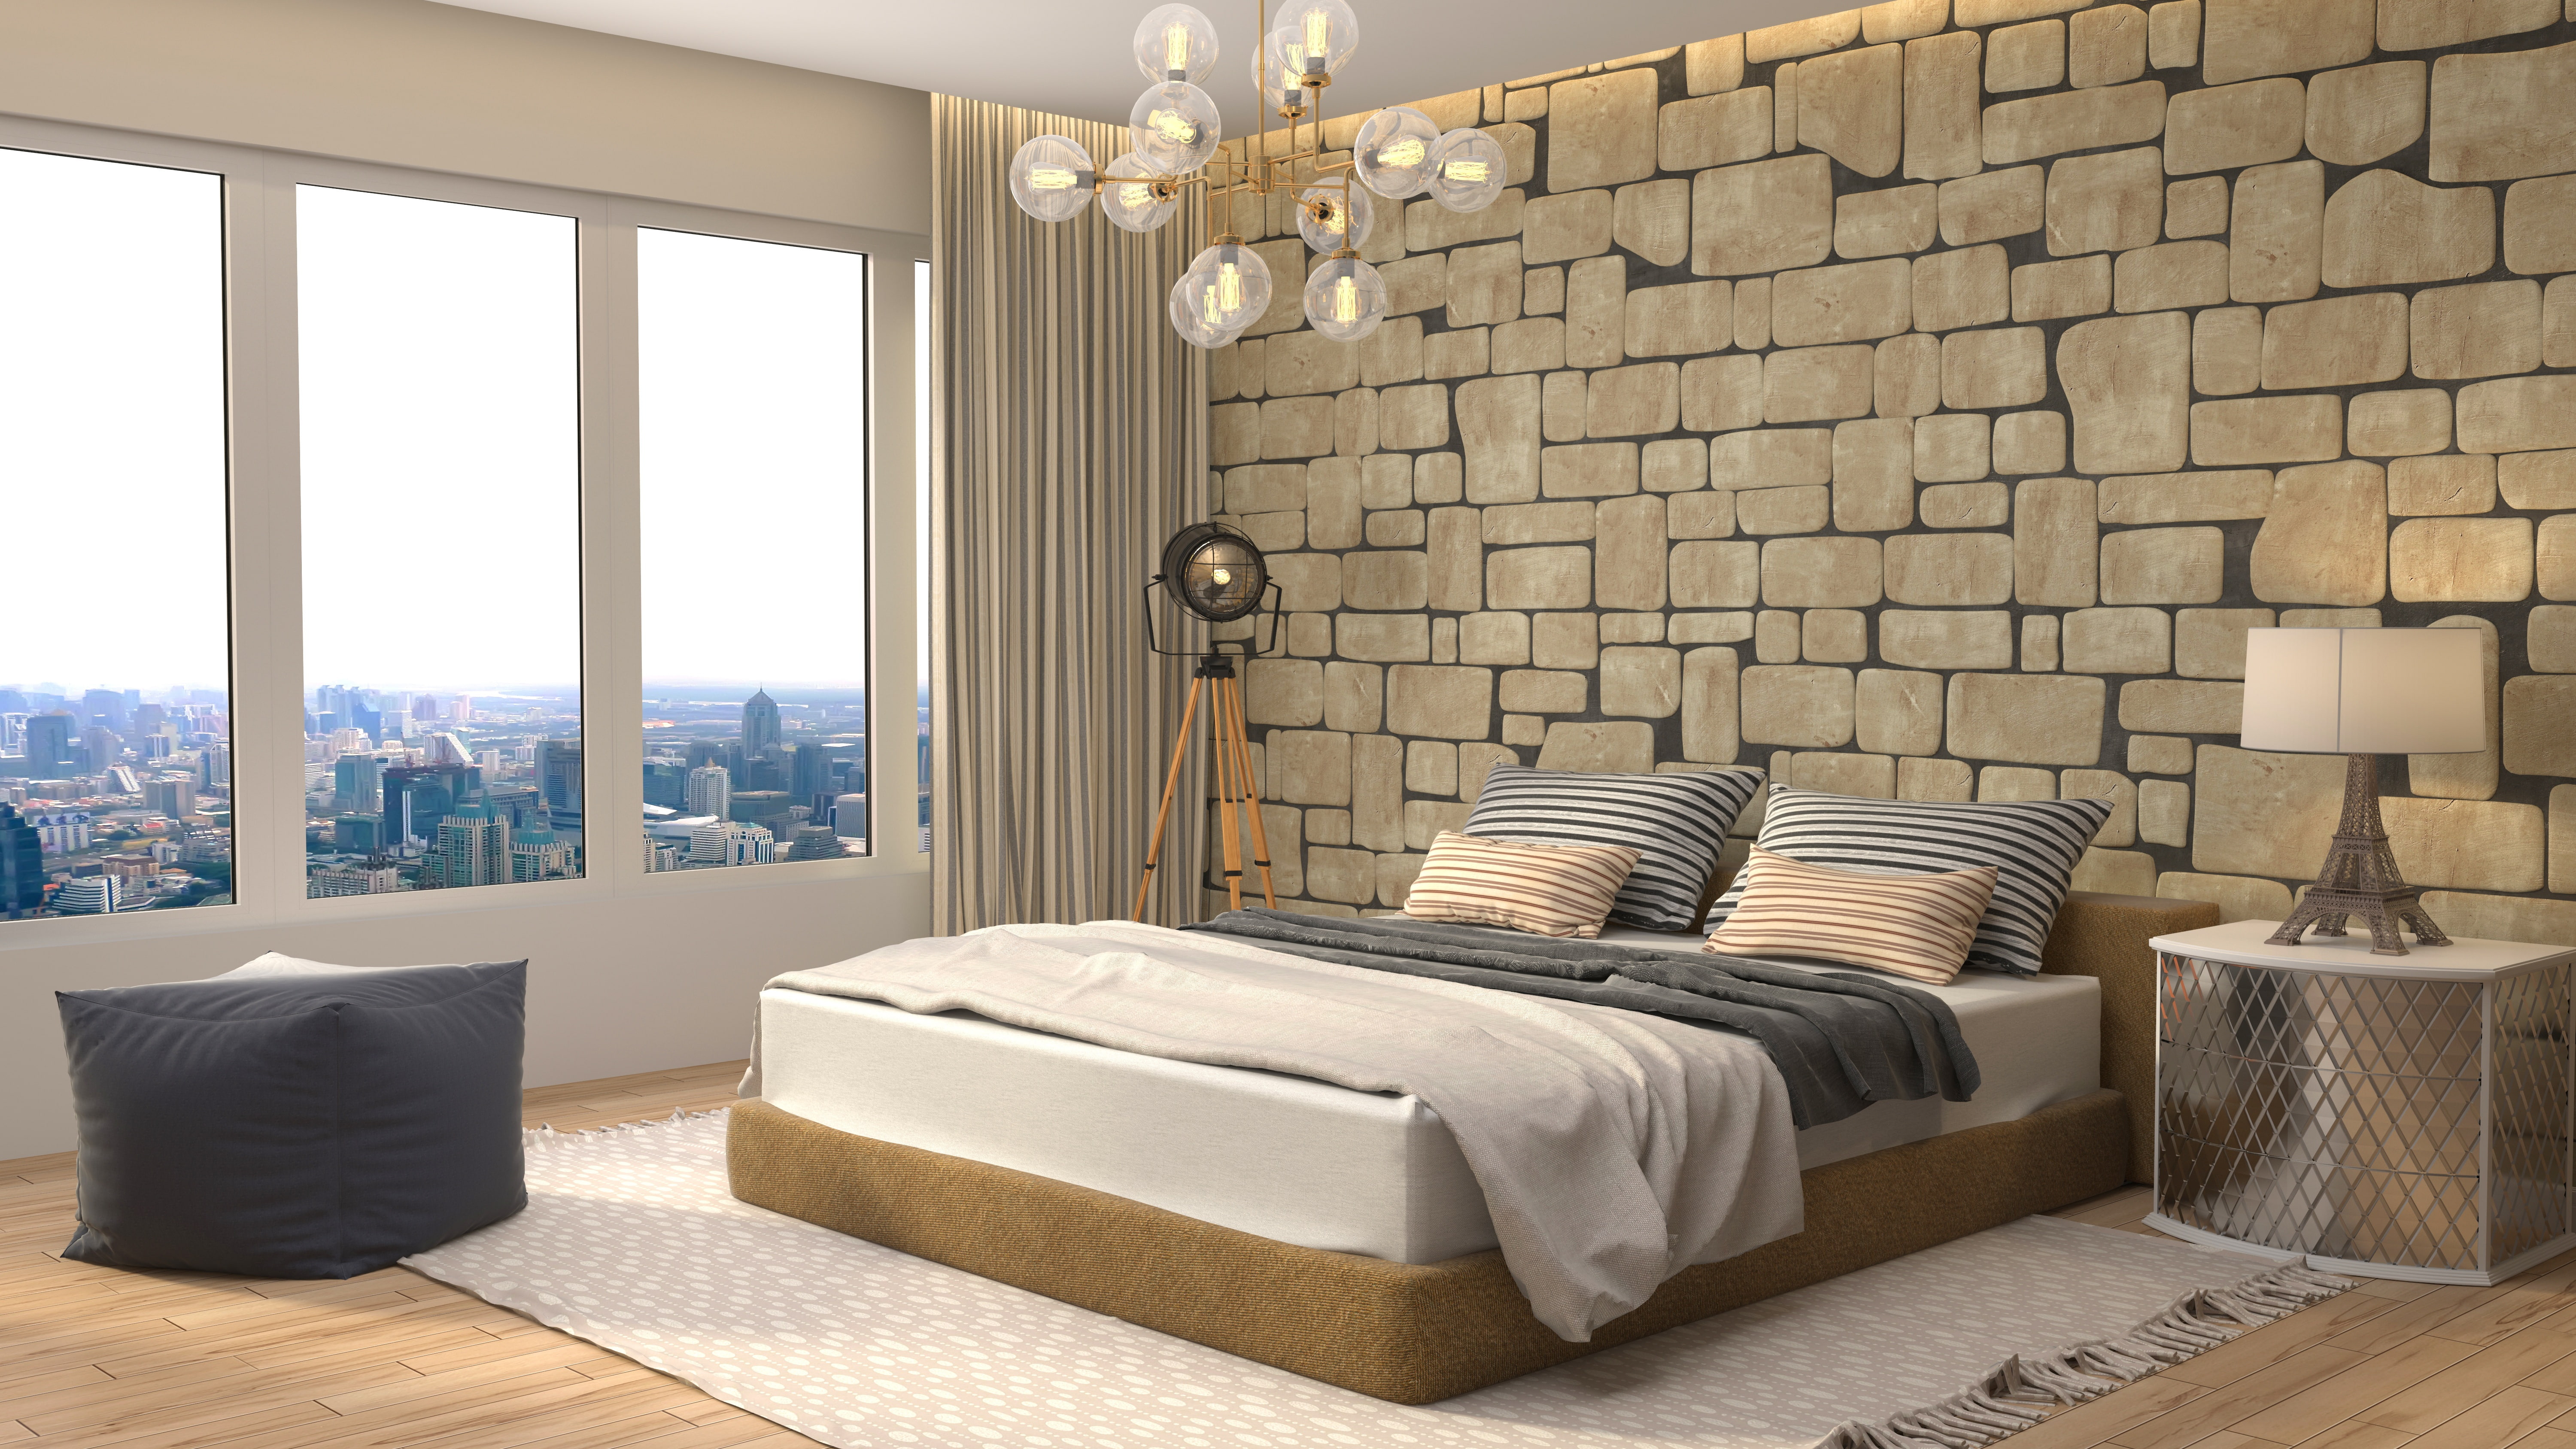 design, lamp, bed, interior, window, chandelier, bedroom, modern